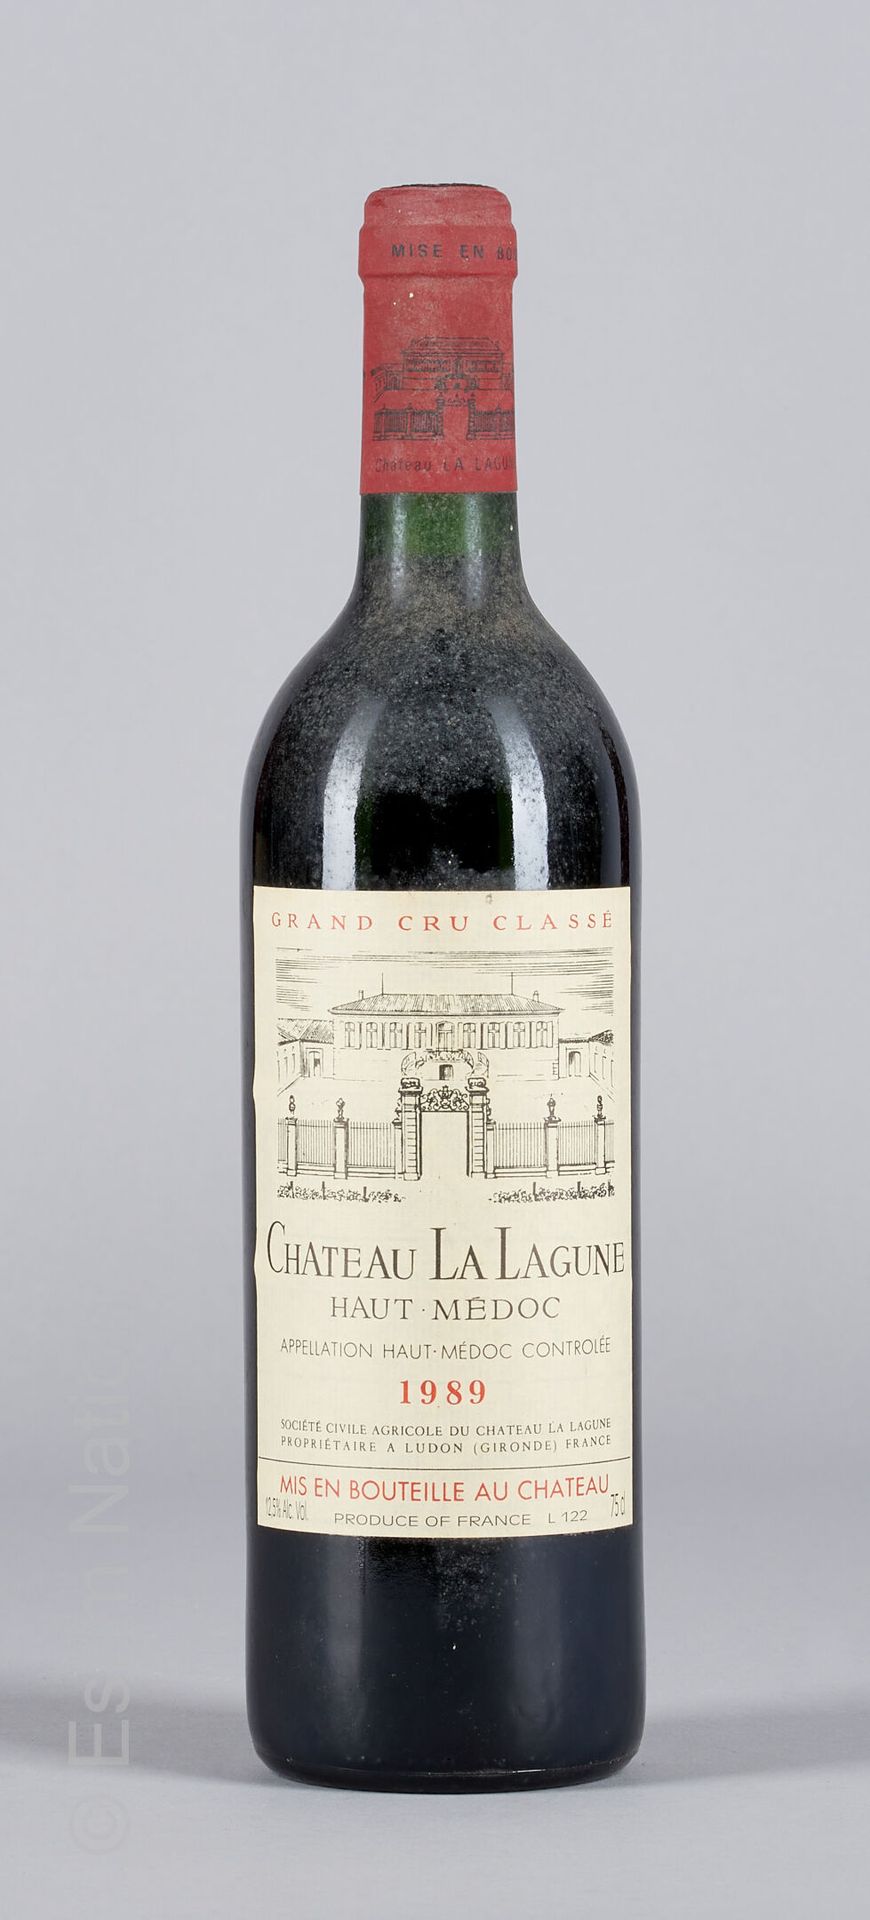 BORDEAUX 1 Flasche Château La Lagune 1986 3e GC Haut-Médoc.

(E. F, tlm)